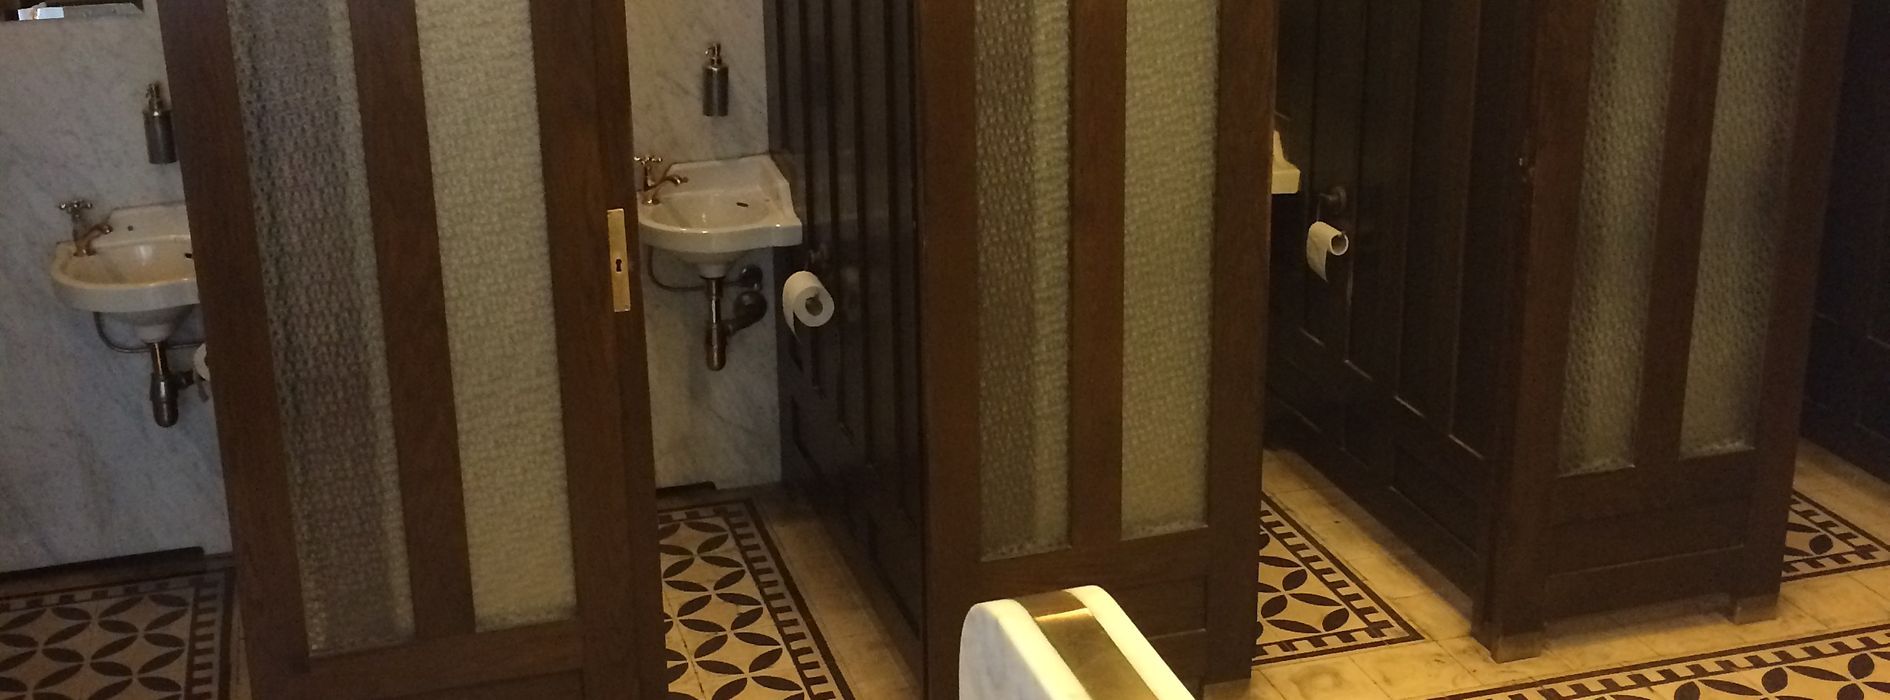 Toaletă în stil Art Nouveau